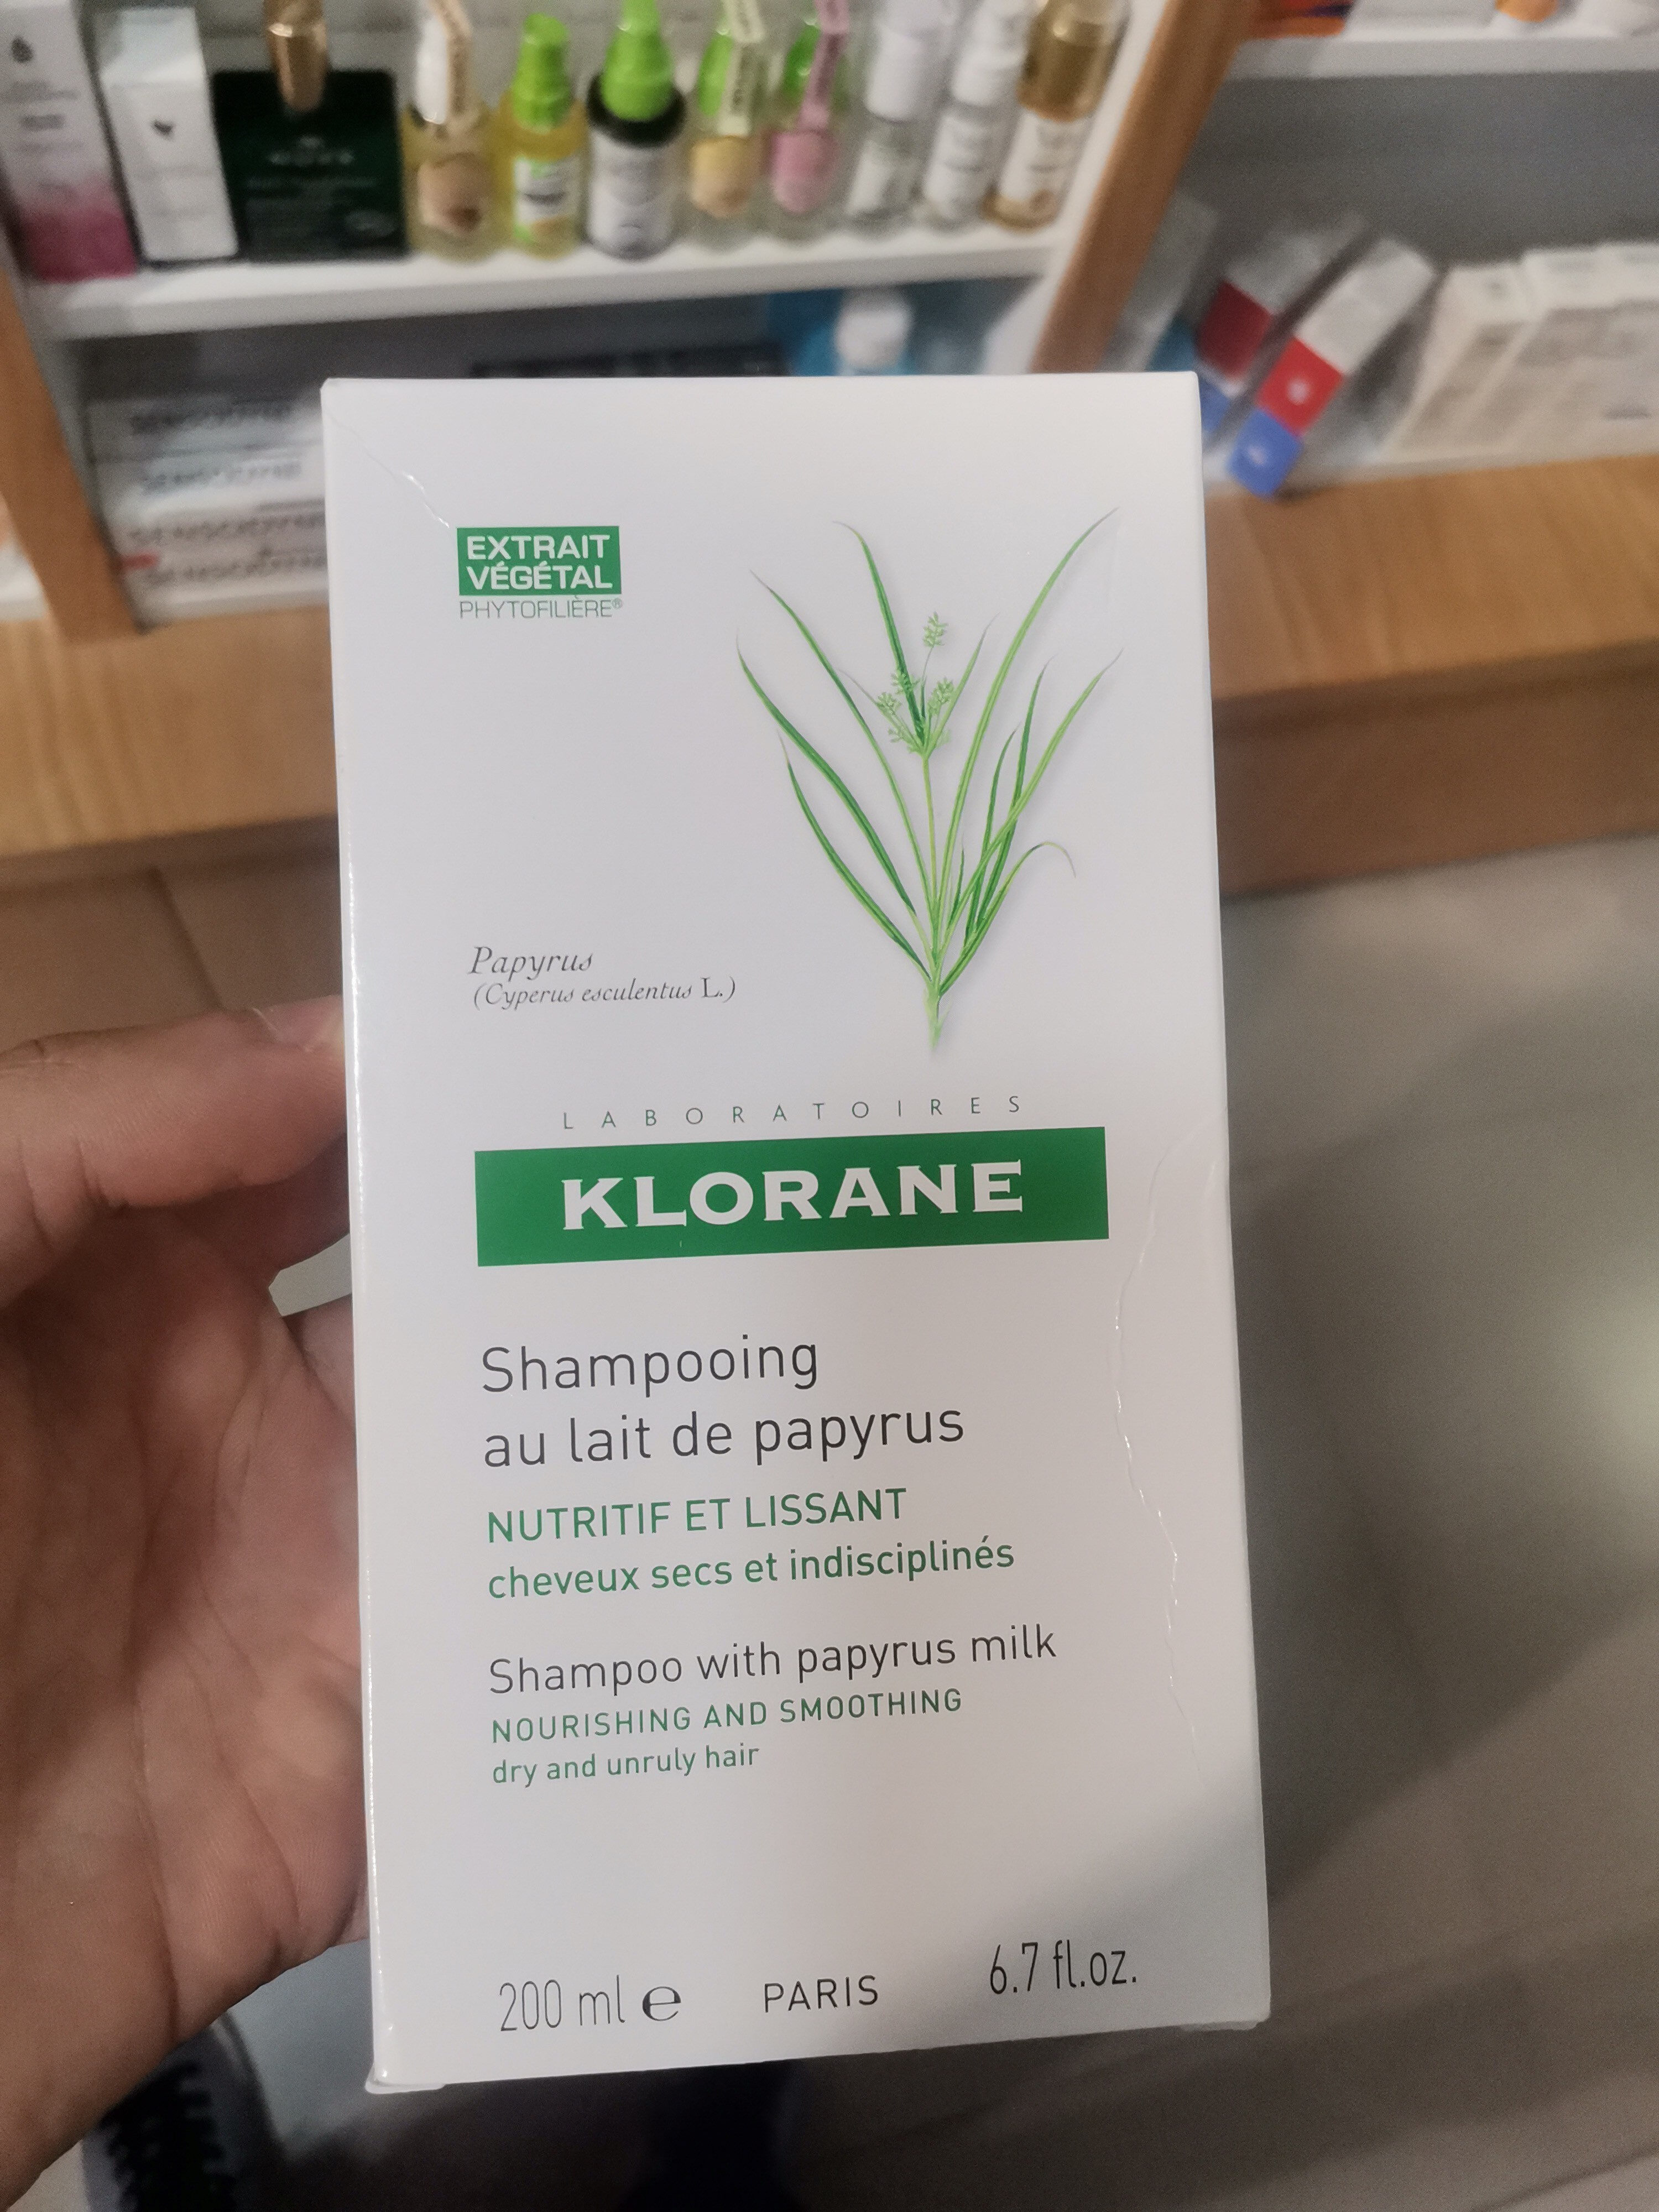 Klorane Shampoing au lait de papyrus - Produkt - fr